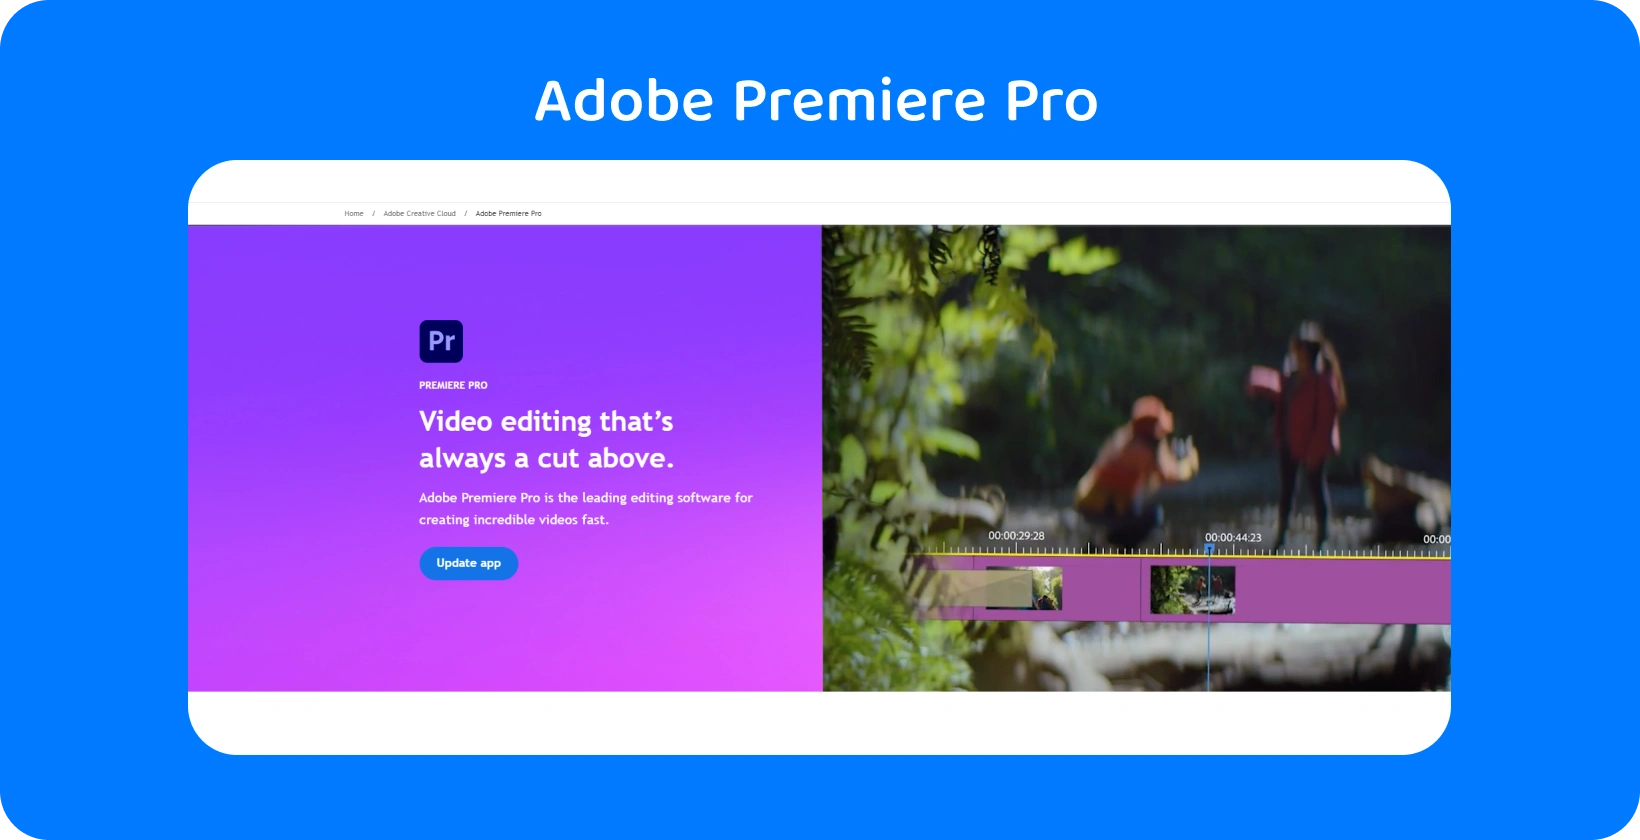 Adobe Premiere Pro rozhranie zobrazujúce pokročilé možnosti úpravy videa, ideálne pre rýchle a presné úpravy.